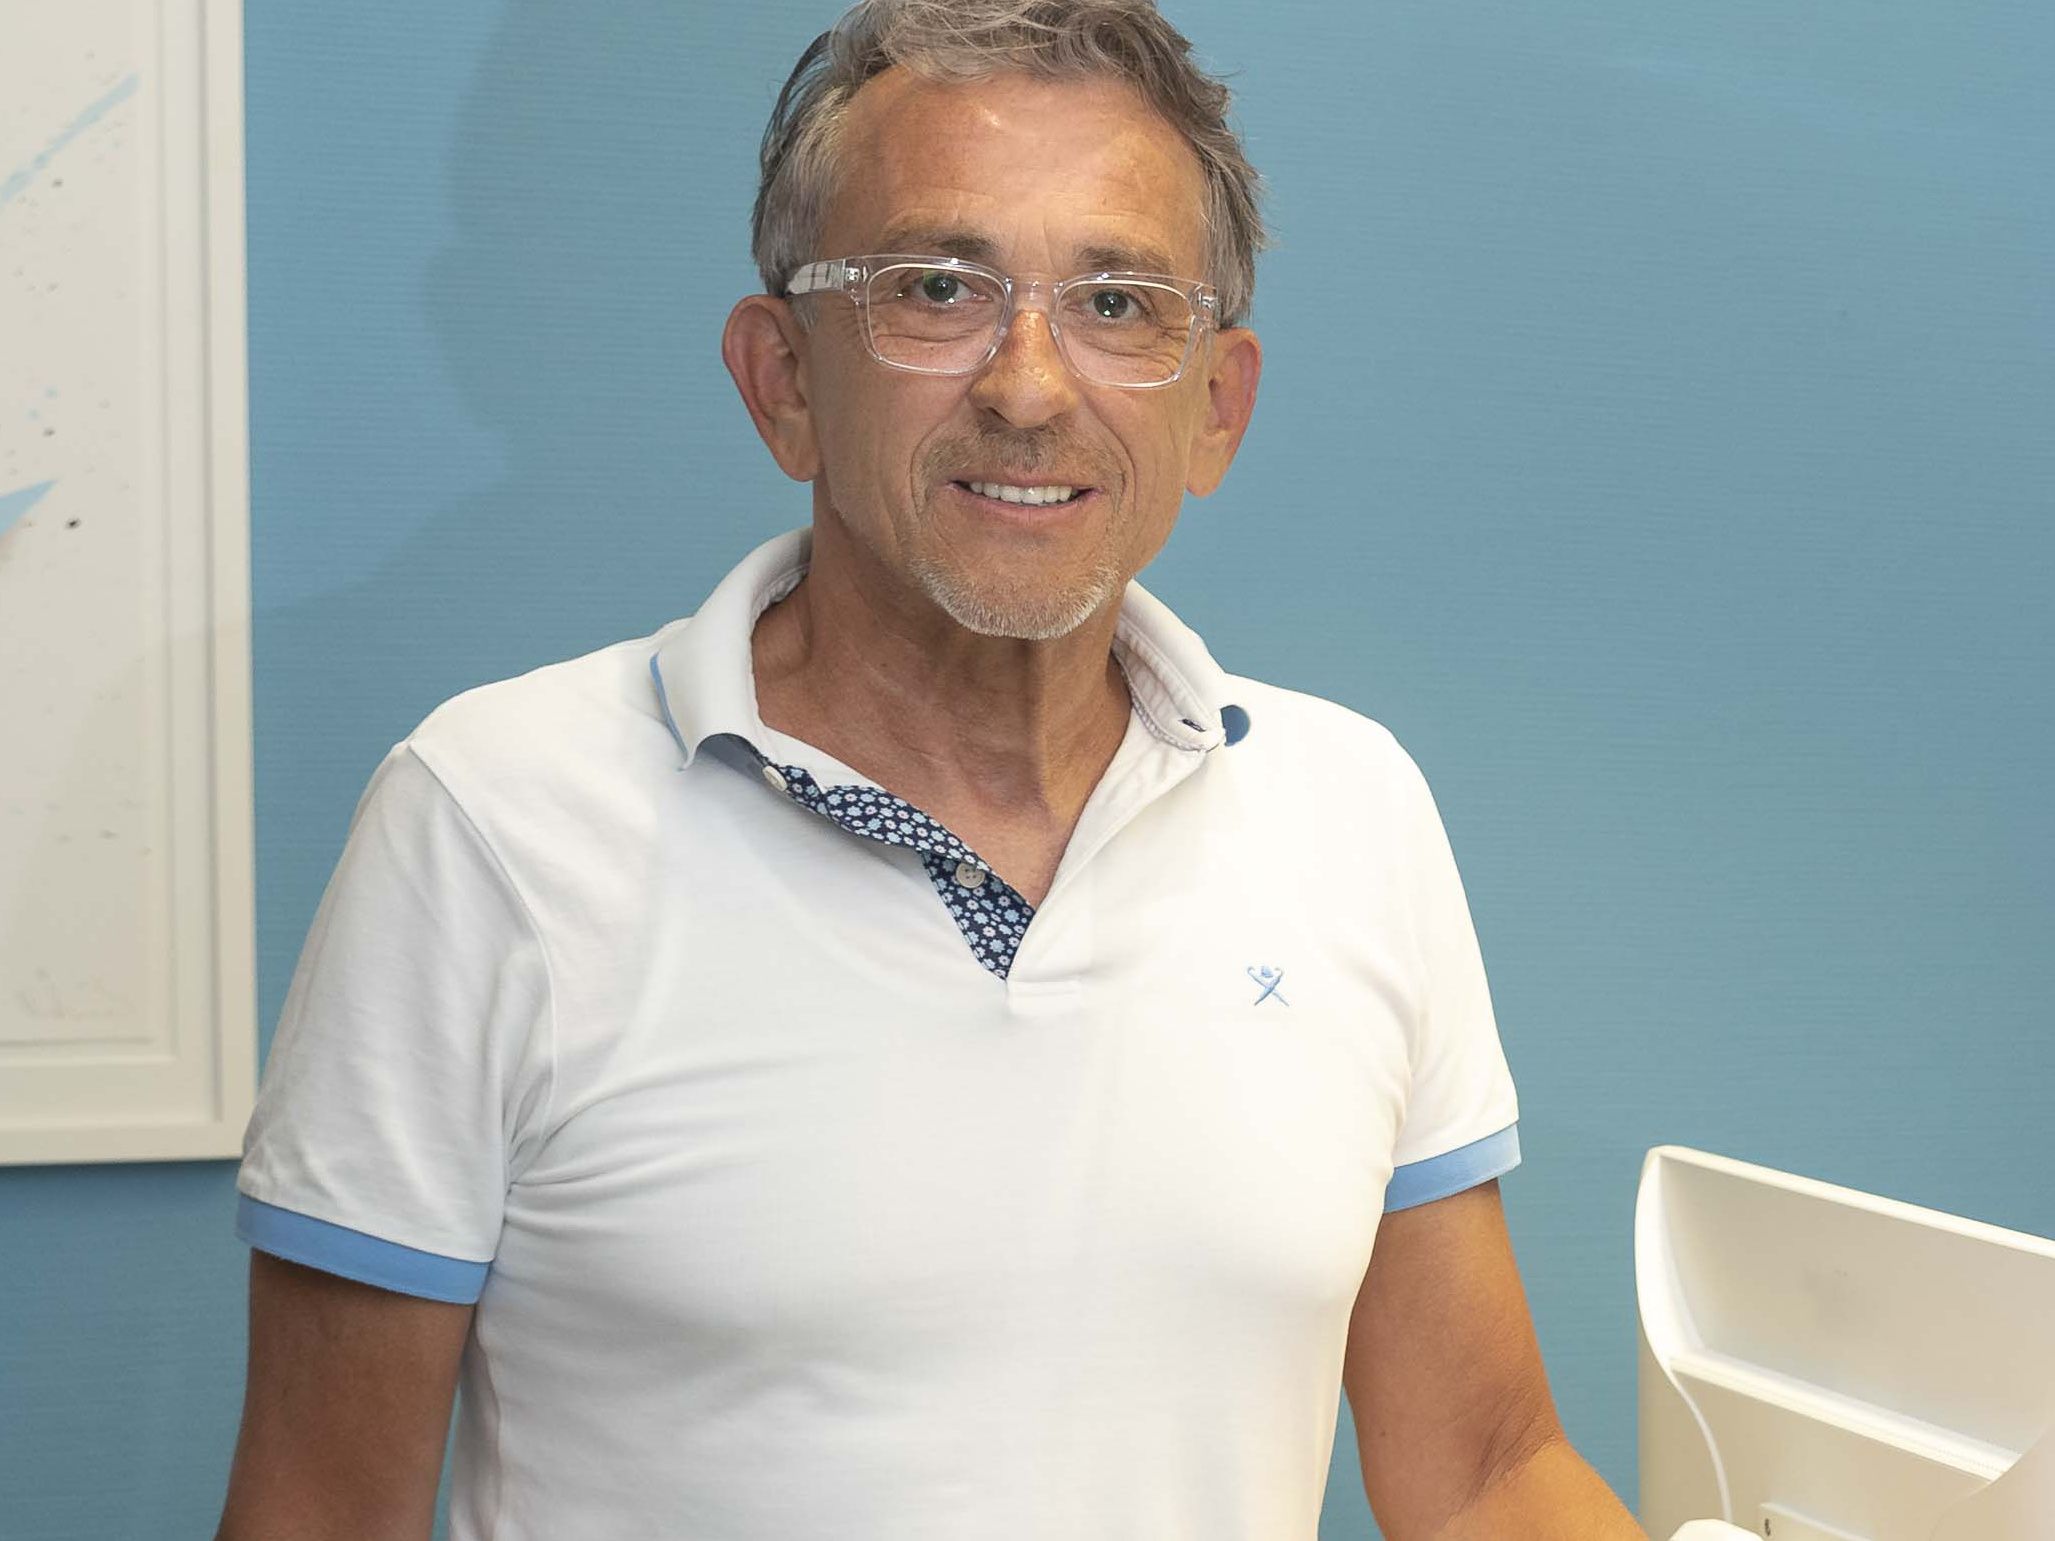 Dr. Frank Conrad ist Urologe und Männerarzt in Köln. Das Bild zeigt ihn lächelnd und zugewandt am Empfang seiner Praxis.